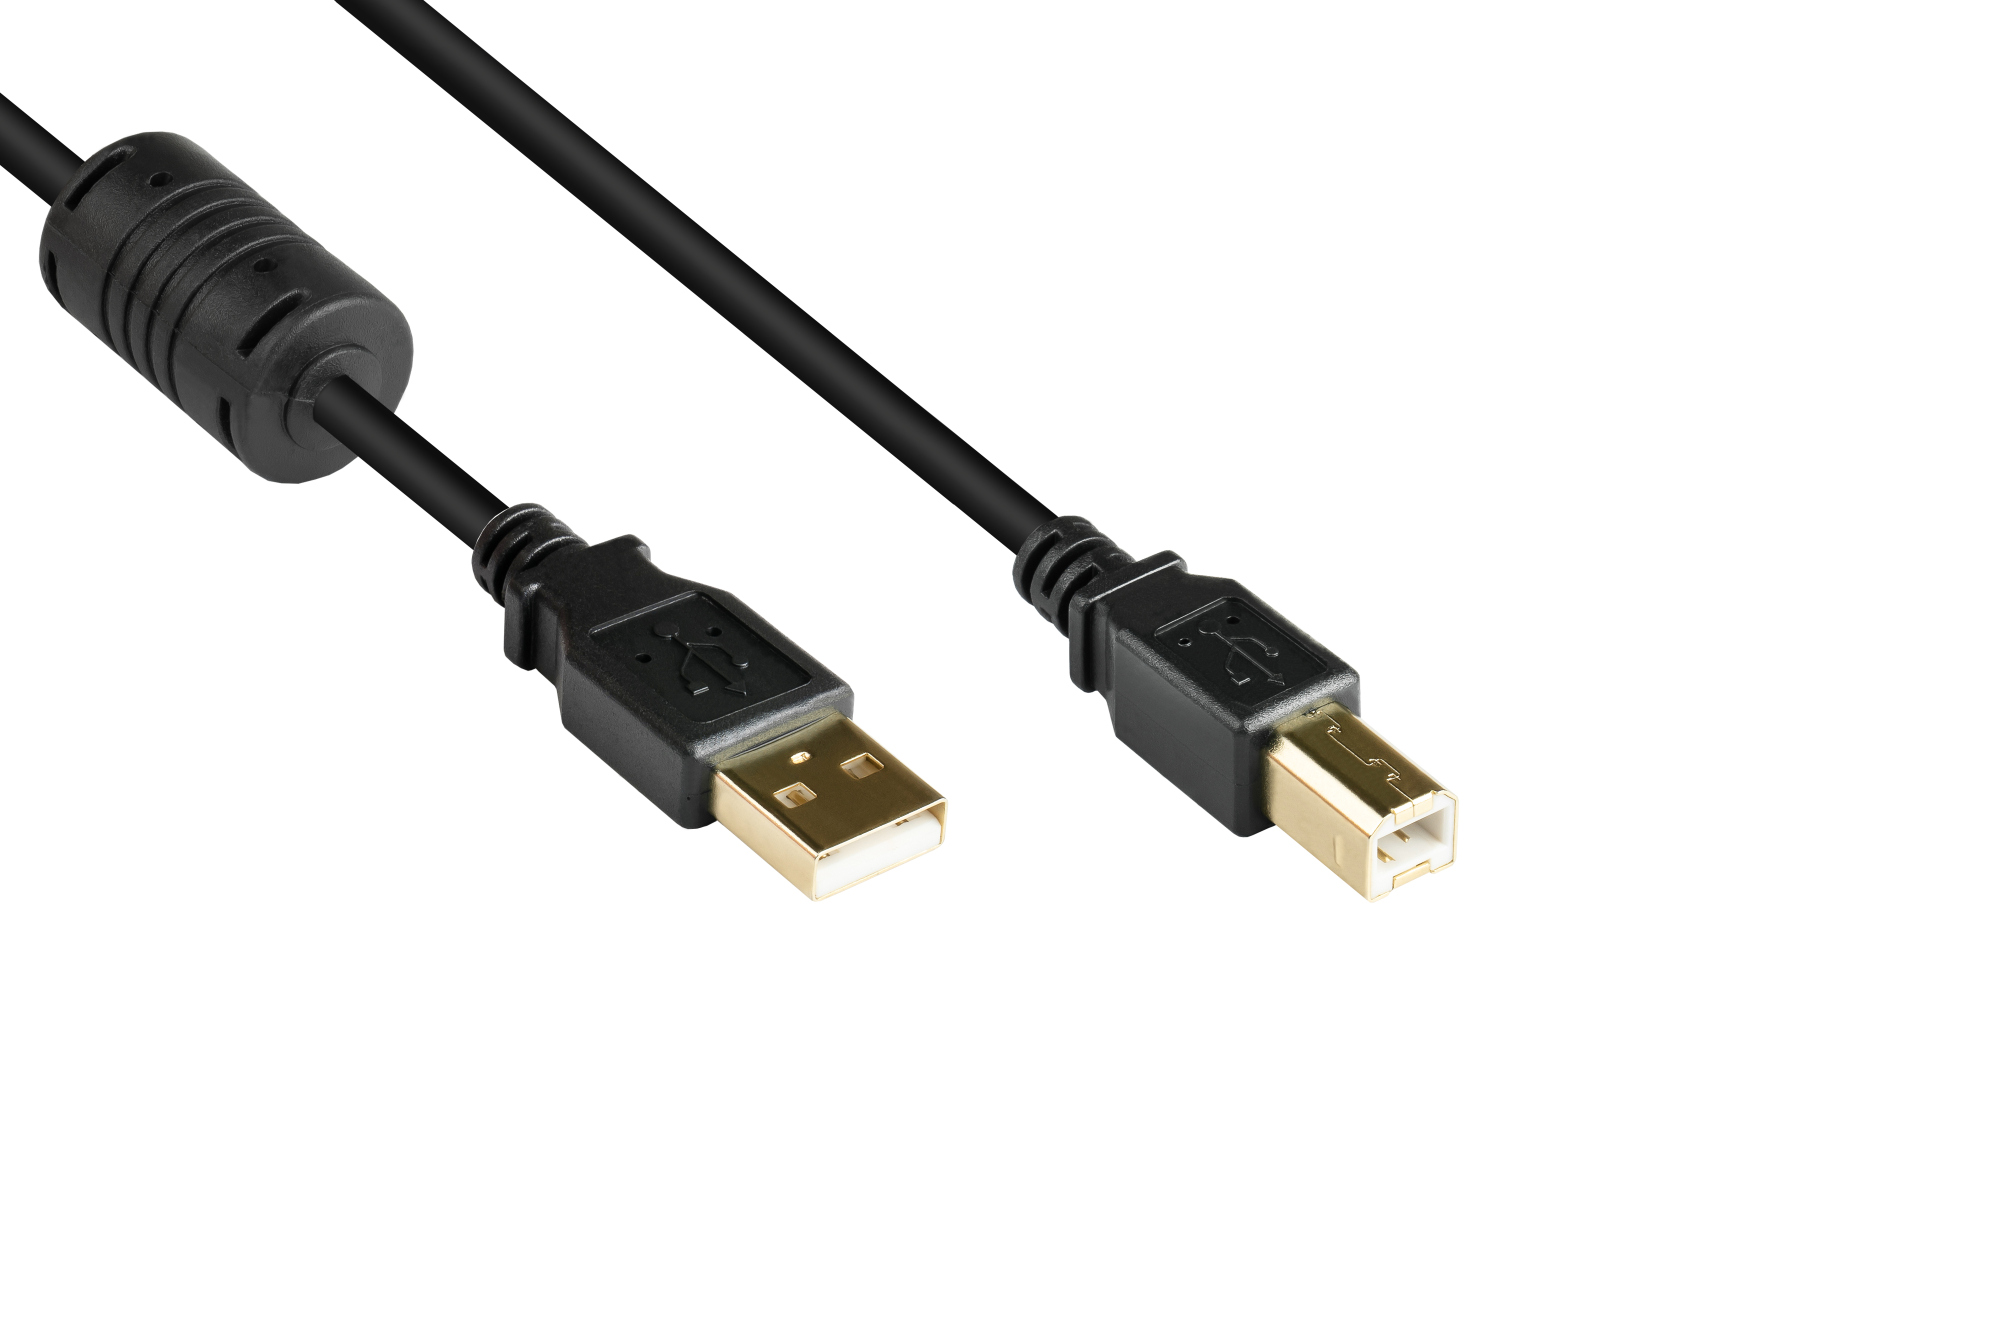 Anschlusskabel USB 2.0 Stecker A an Stecker B, mit Ferritkern, vergoldet, schwarz, 0,5m, Good Connec